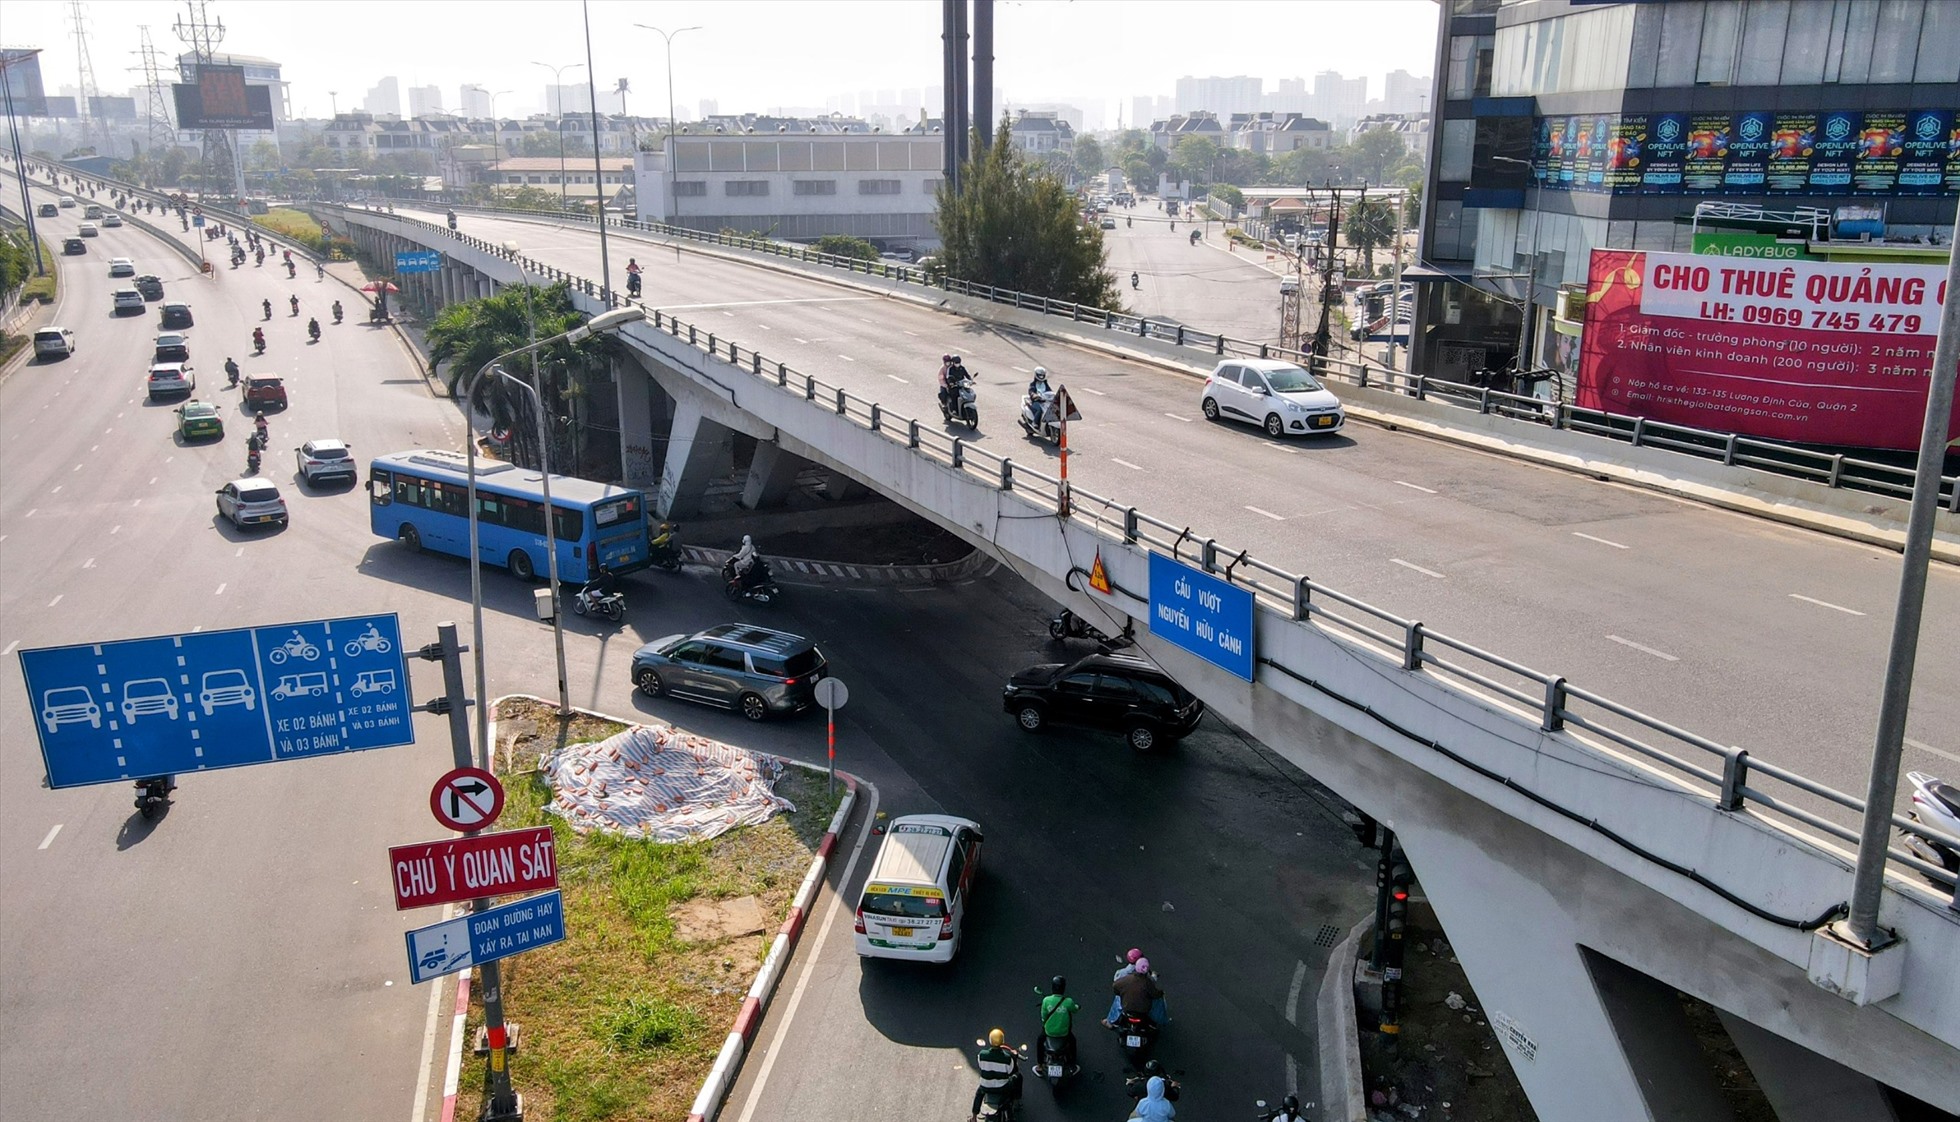 Trước đó, sáng 27/2, đơn vị kiểm định đã cho thử tải lần cuối với tải trọng cao nhất đạt 180 tấn tại vị trí gặp sự cố của cầu vượt Nguyễn Hữu Cảnh để làm cơ sở cho ô tô di chuyển qua cầu.